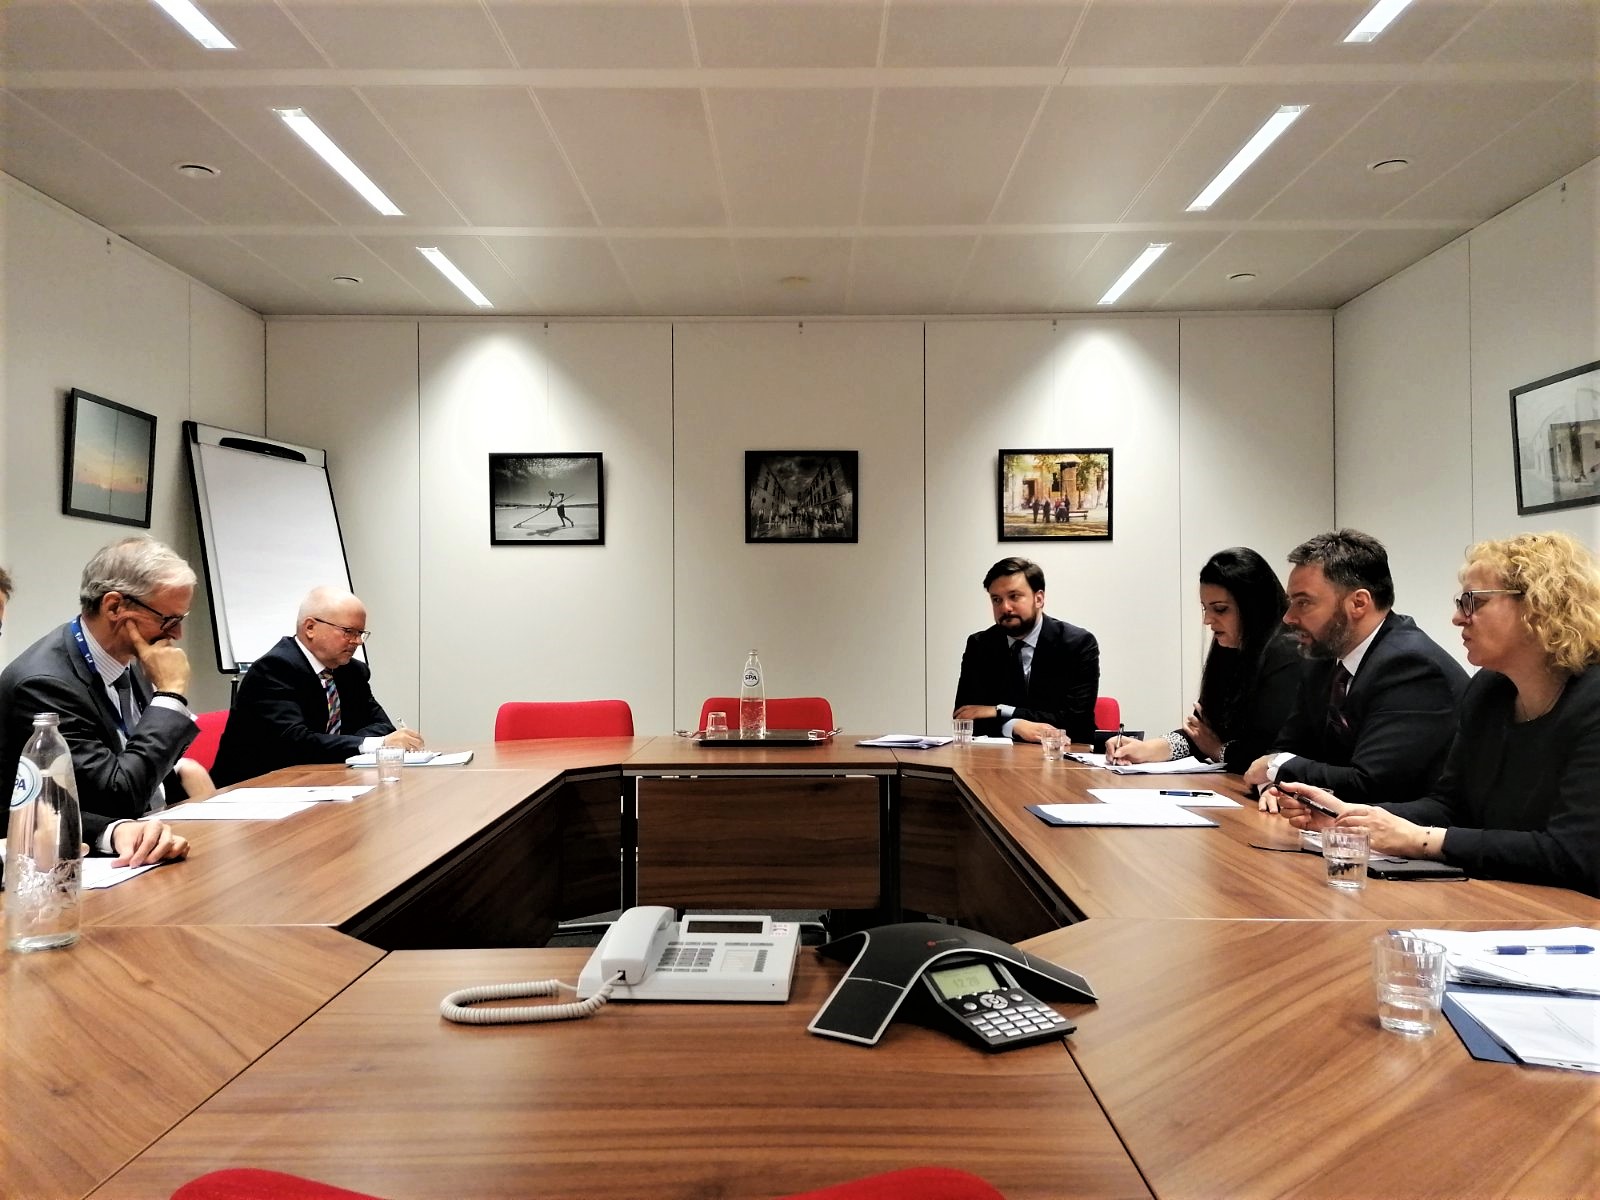 Picture for Ministar Košarac u Briselu: Intenzivirati saradnju sa institucijama EU